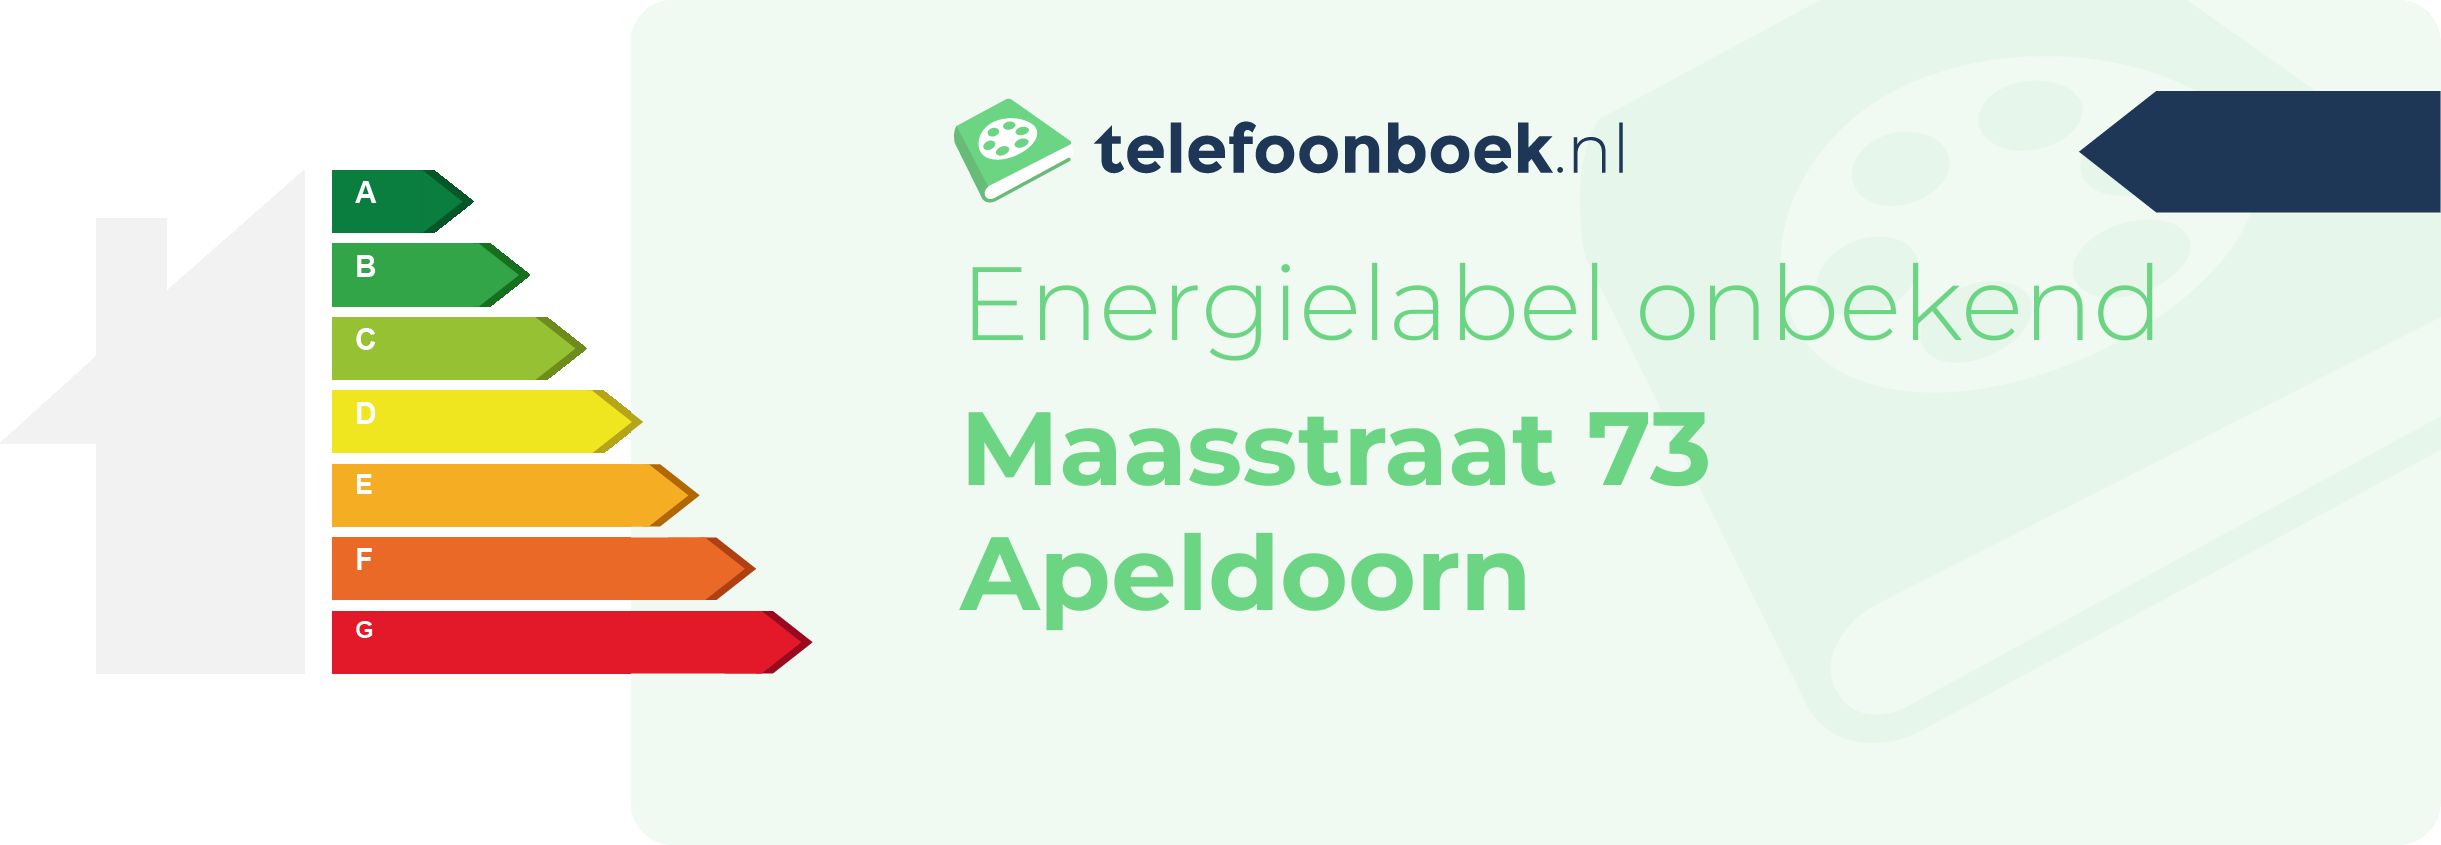 Energielabel Maasstraat 73 Apeldoorn